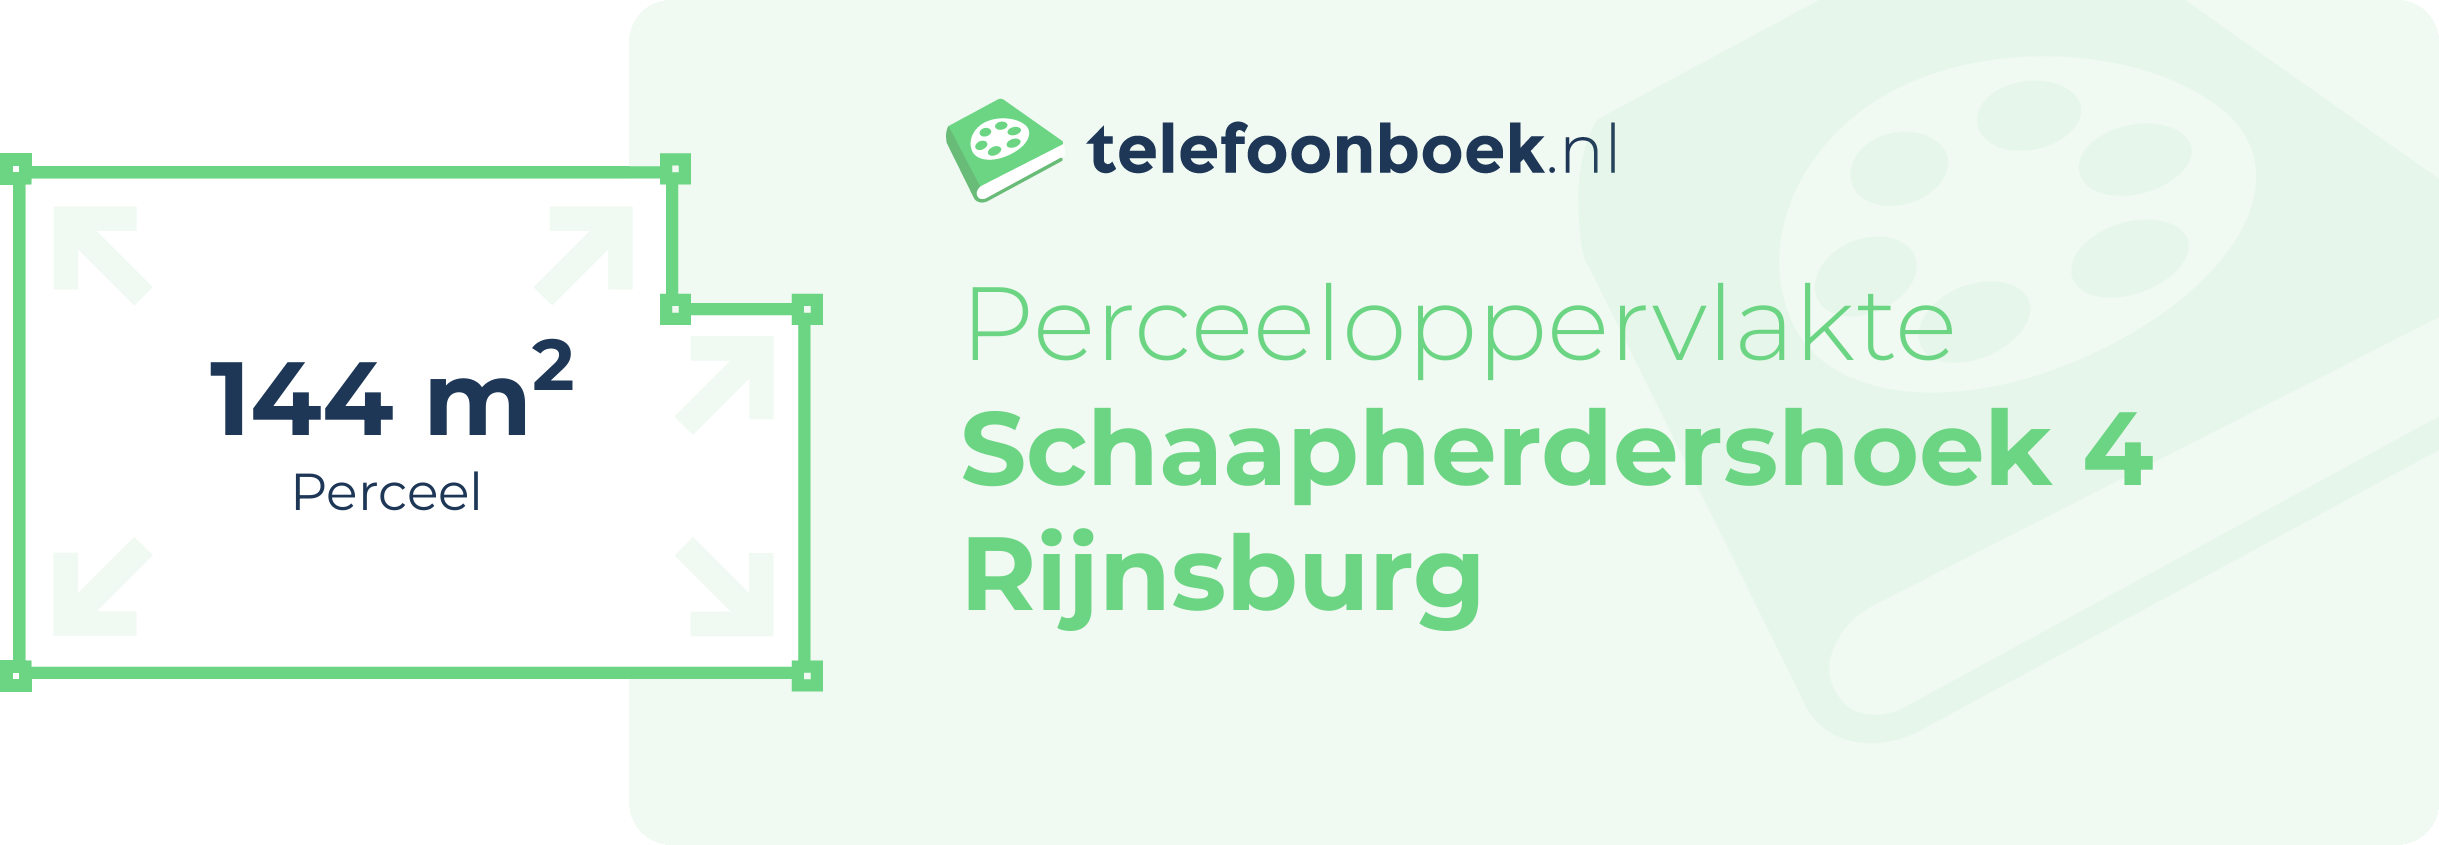 Perceeloppervlakte Schaapherdershoek 4 Rijnsburg